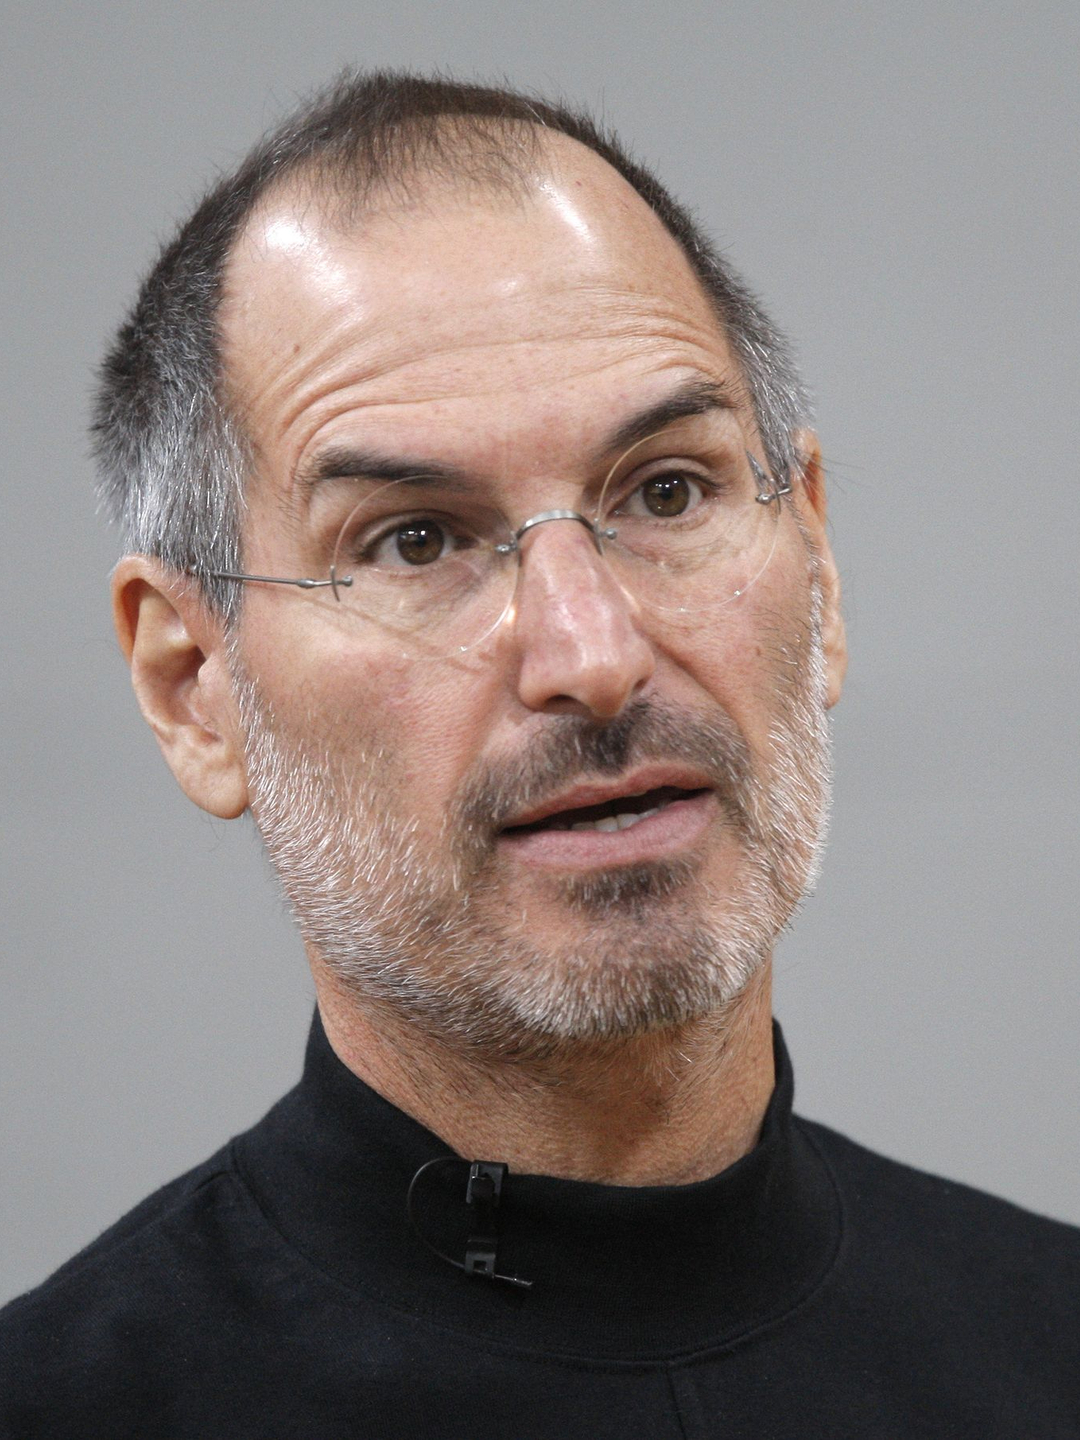 Steve Jobs love story